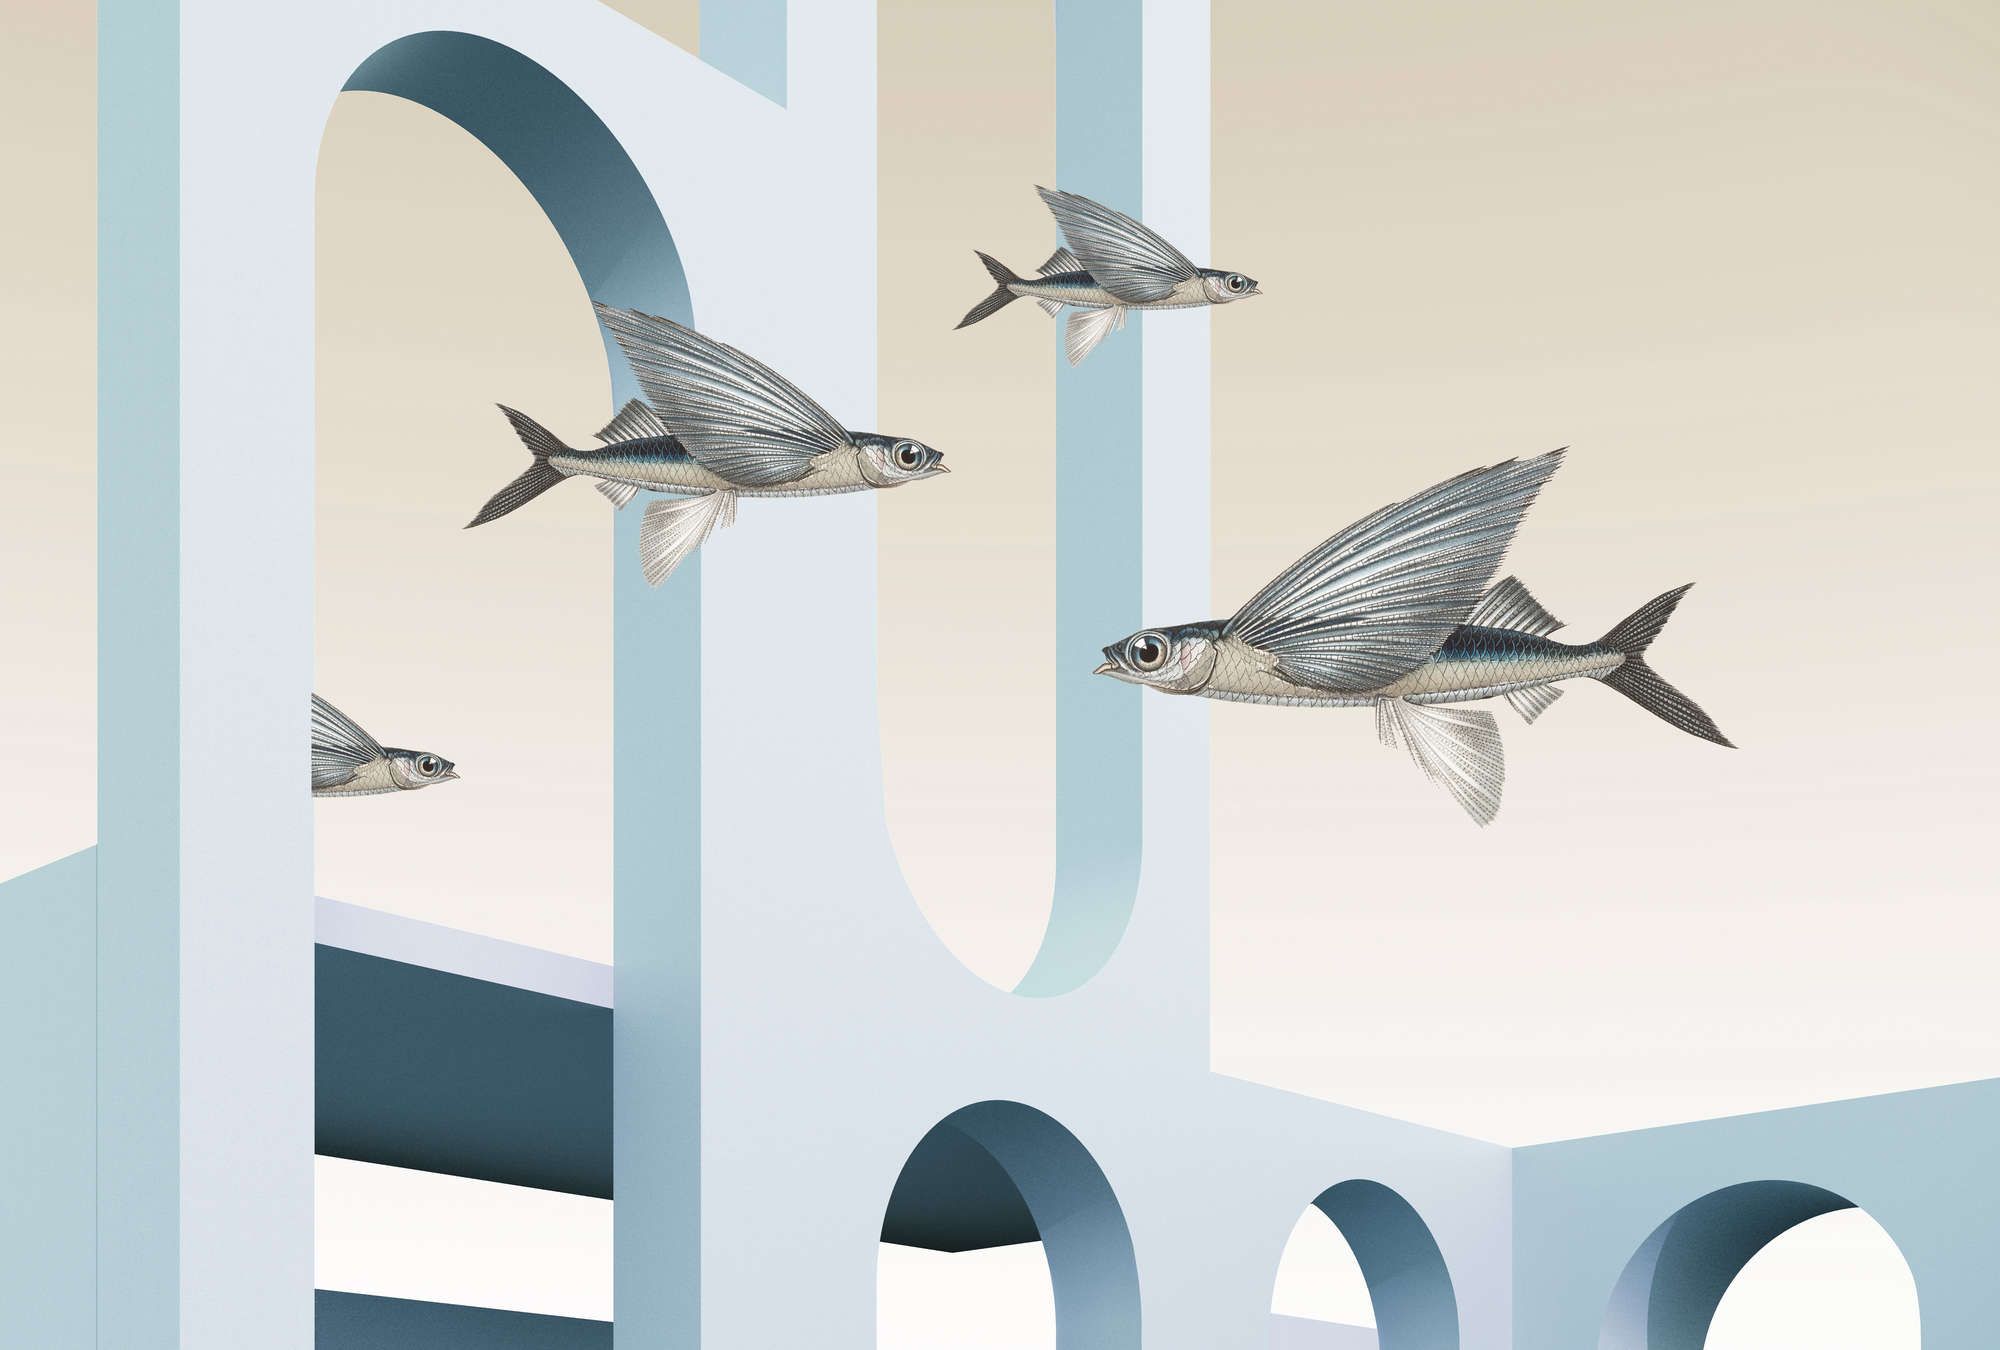             styx - Digital behang met abstracte 3D architectuur en vliegende vissen - Licht structuurvlies
        